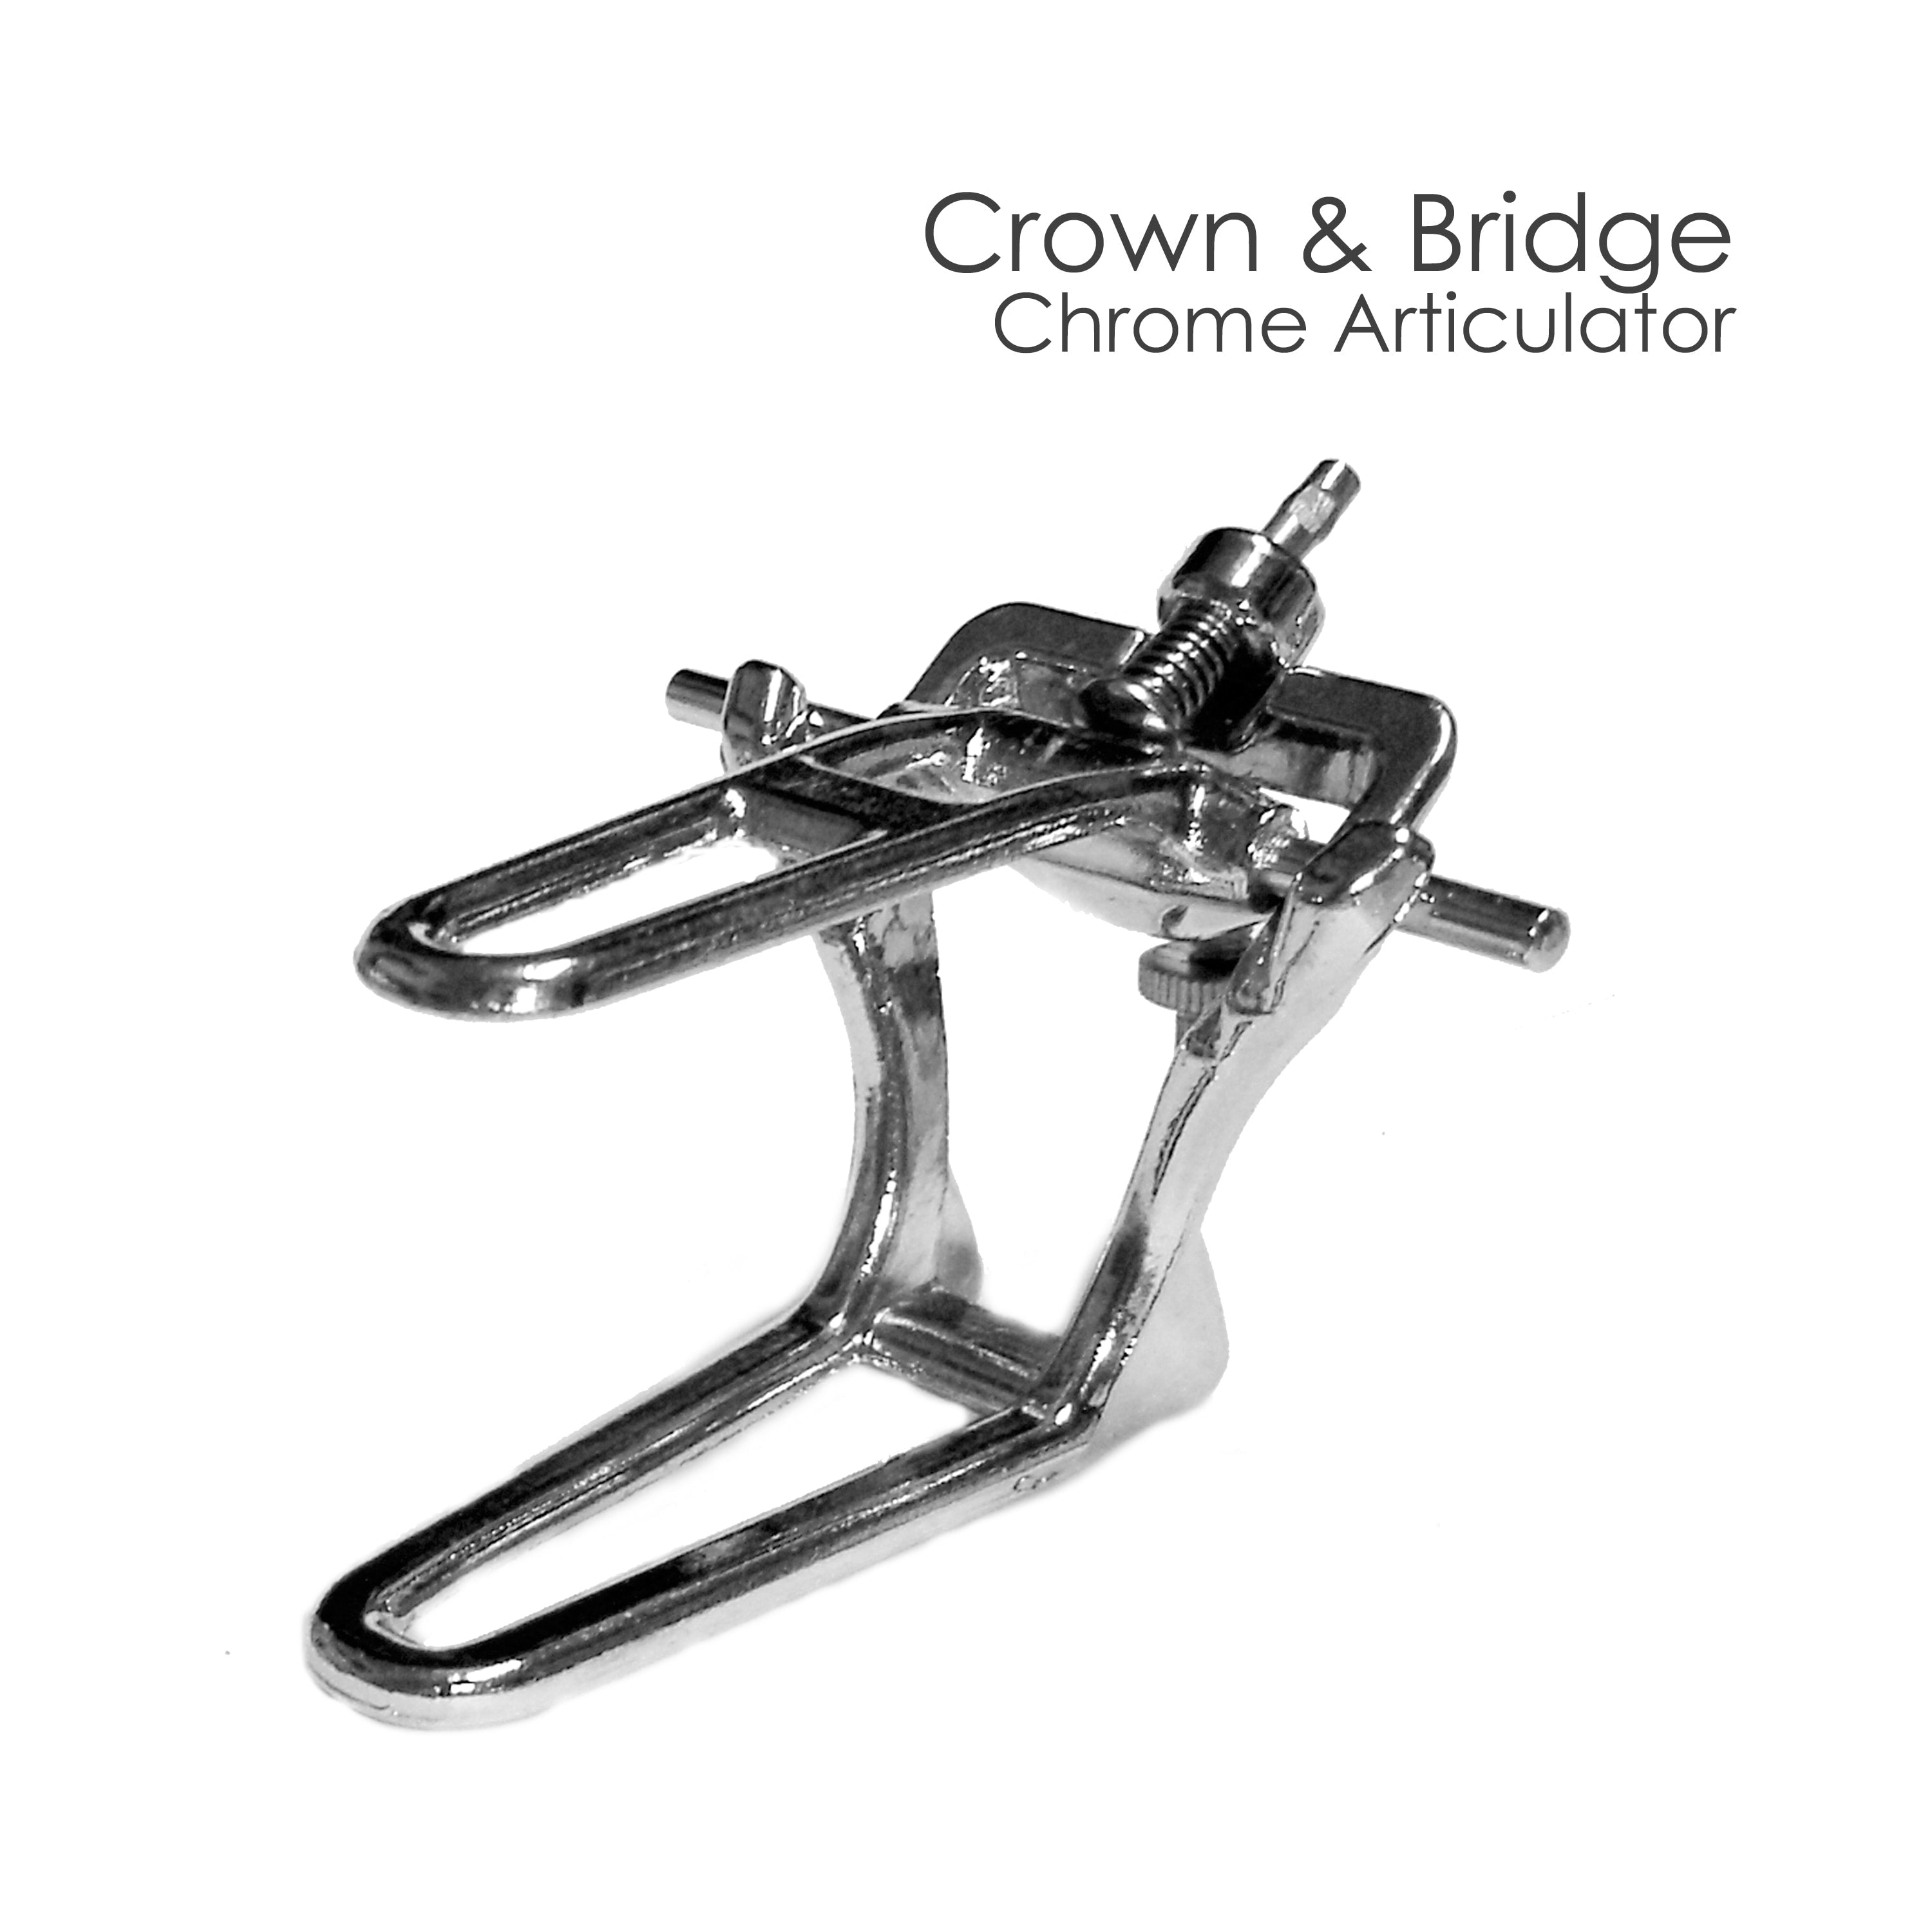 Chrome Metal Articulator